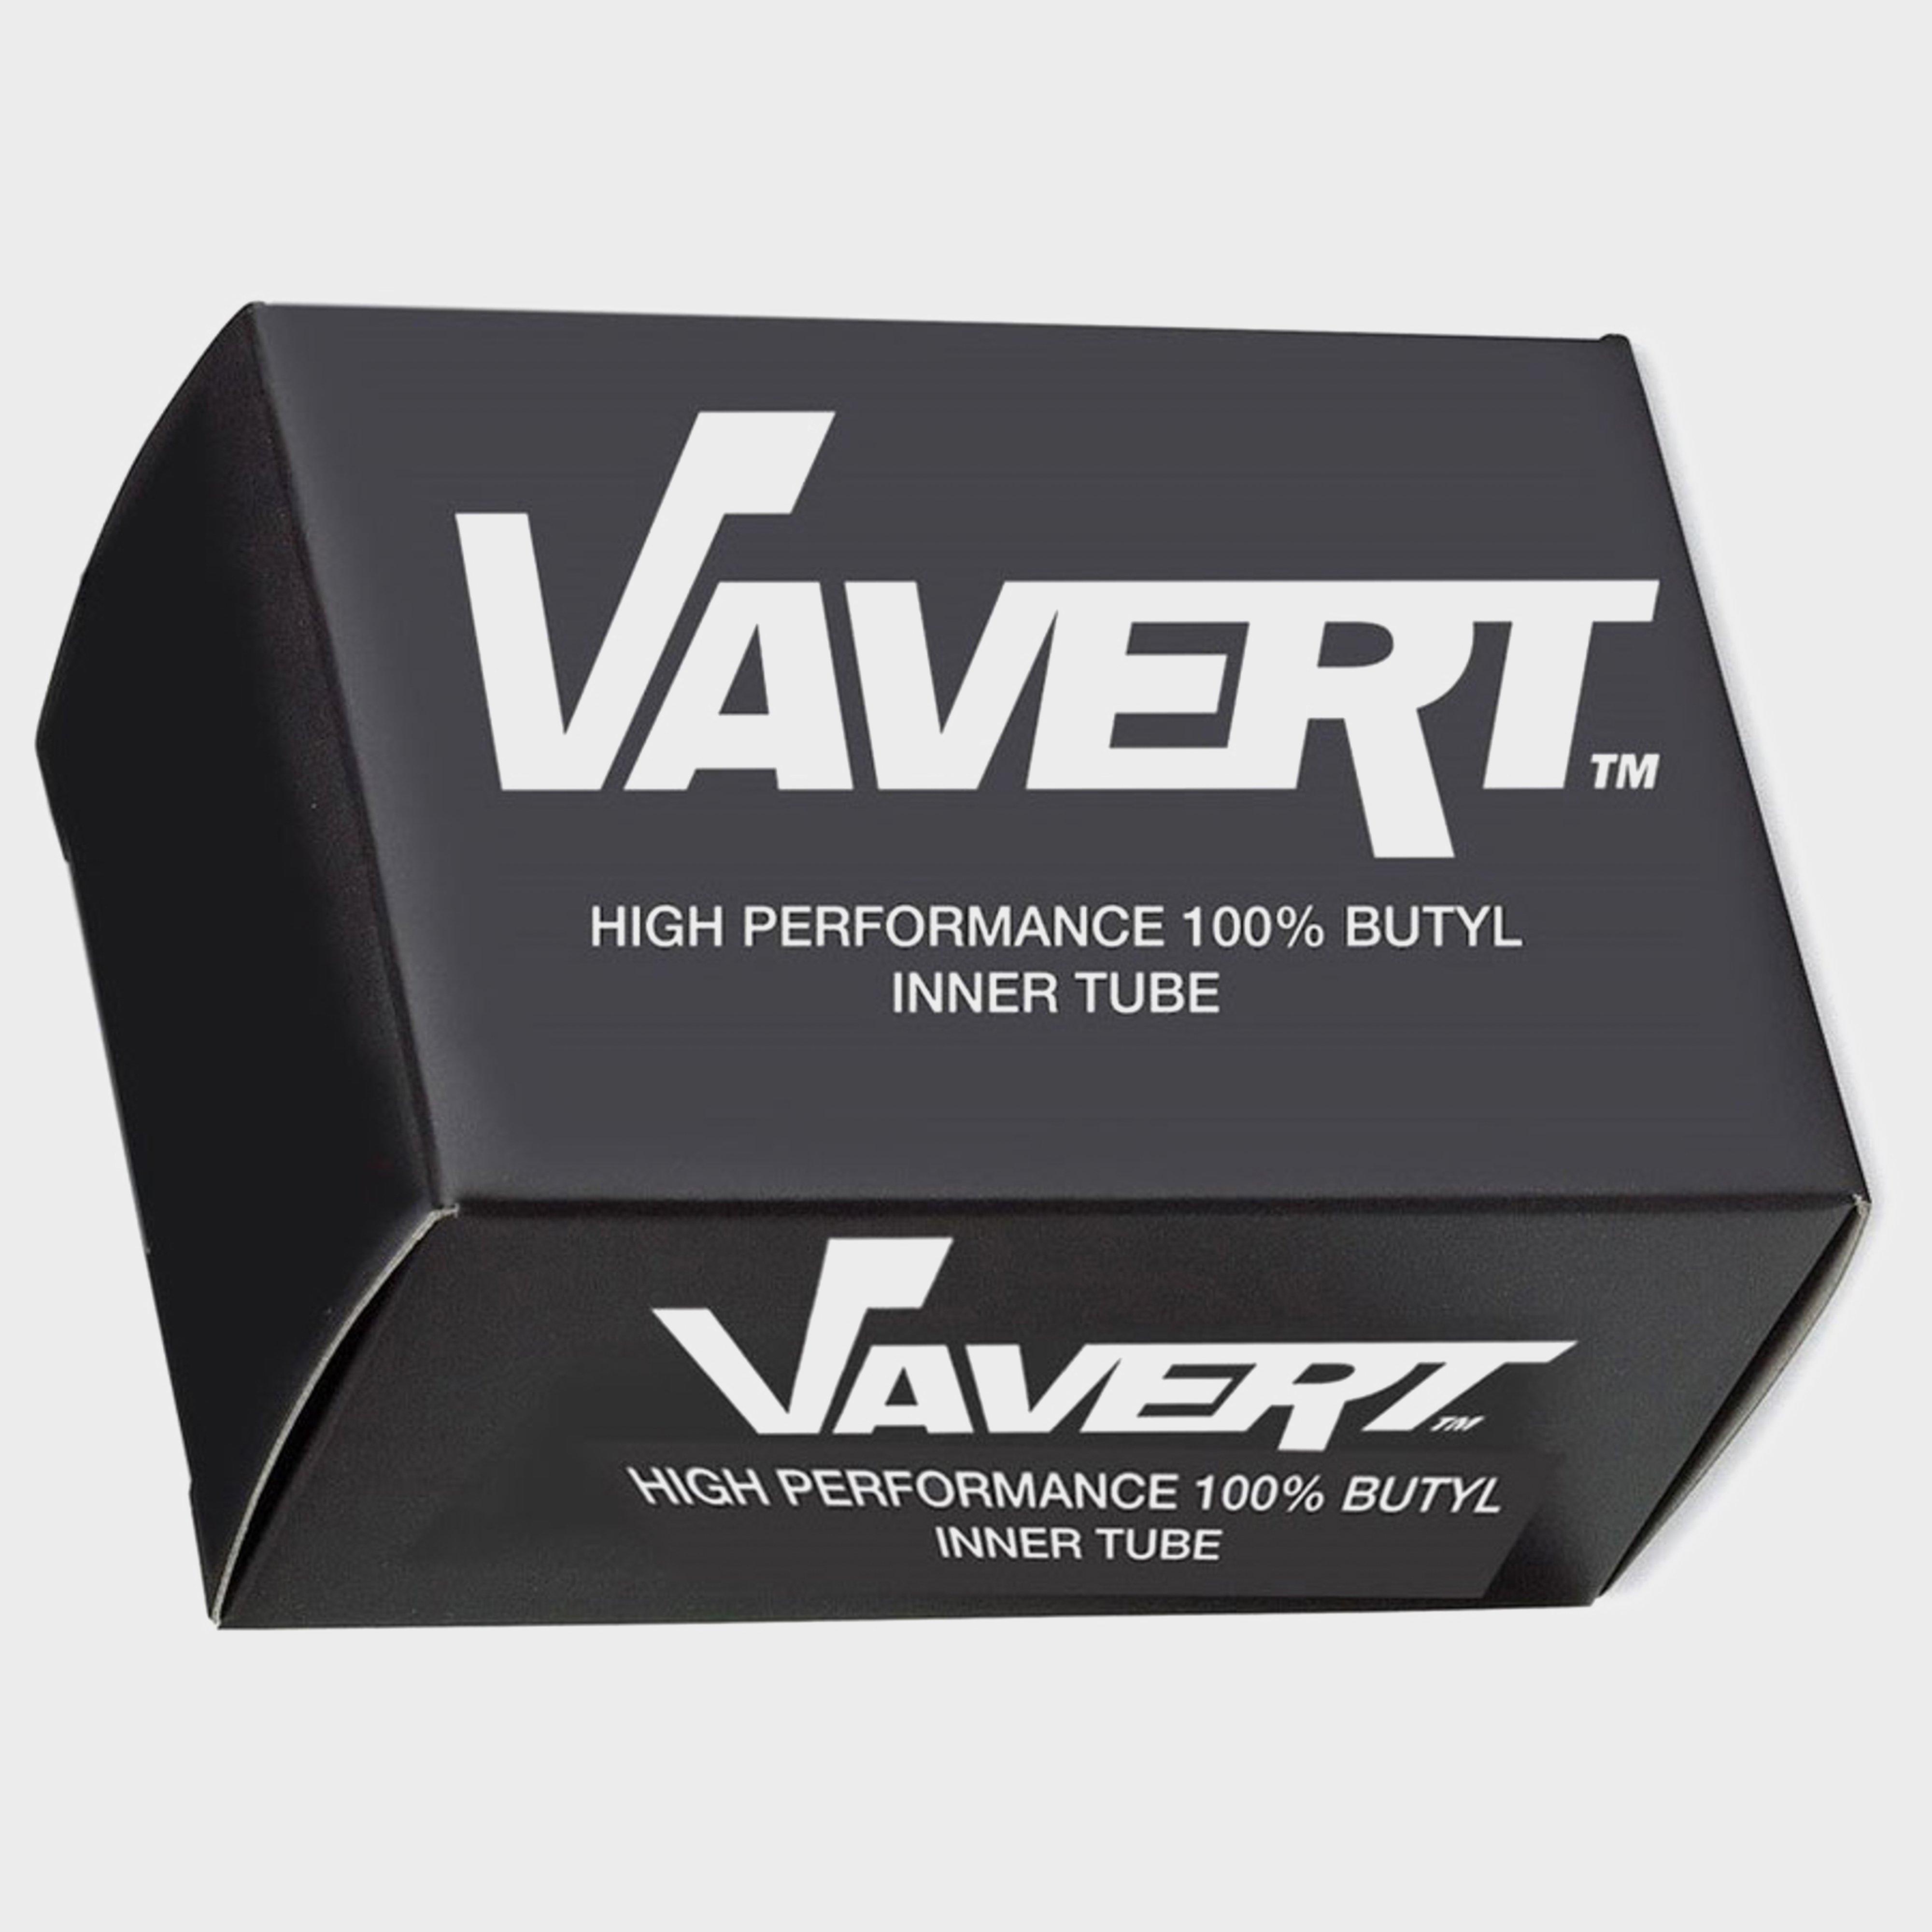 Vavert 700 X 35/43c Schrader (40mm) Innertube  Black